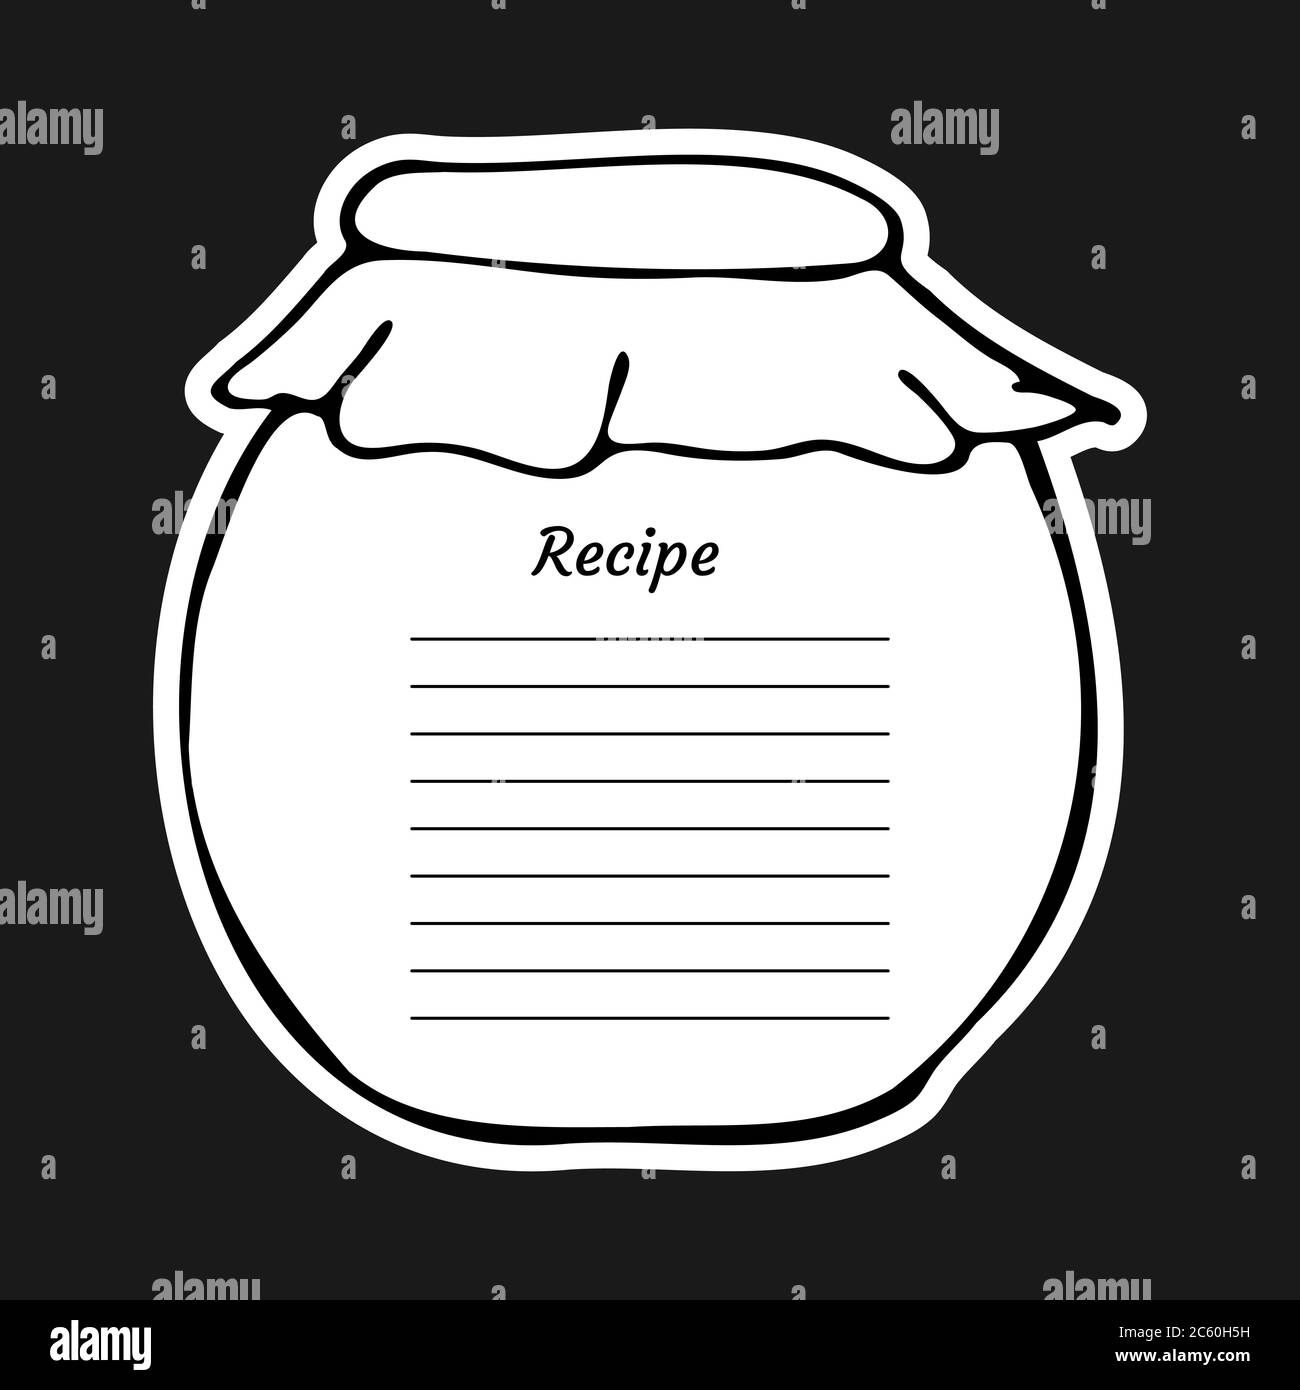 Rezeptkarte mit Text und großem Glas. Zum Aufschreiben eines Rezeptes. Vektorgrafik Design. Kochbuch-Vorlagenseite. Stock Vektor